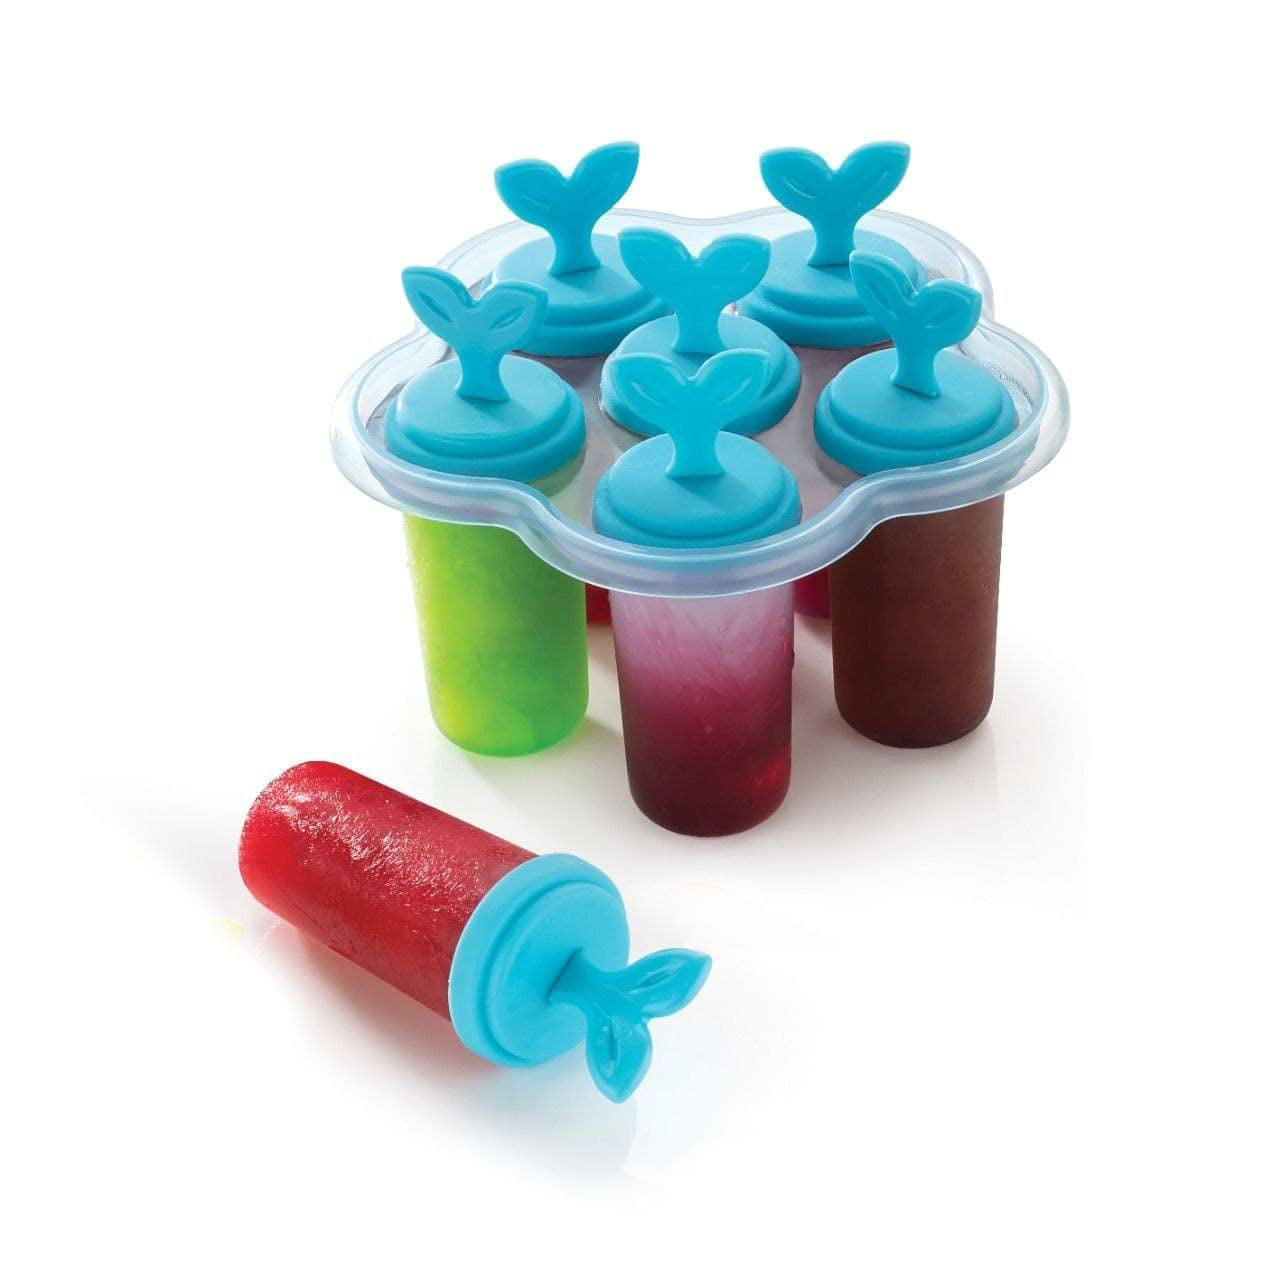 Buy SEVRIZ Plastic Ice Tray Candy Maker Kulfi Maker/Set with 6